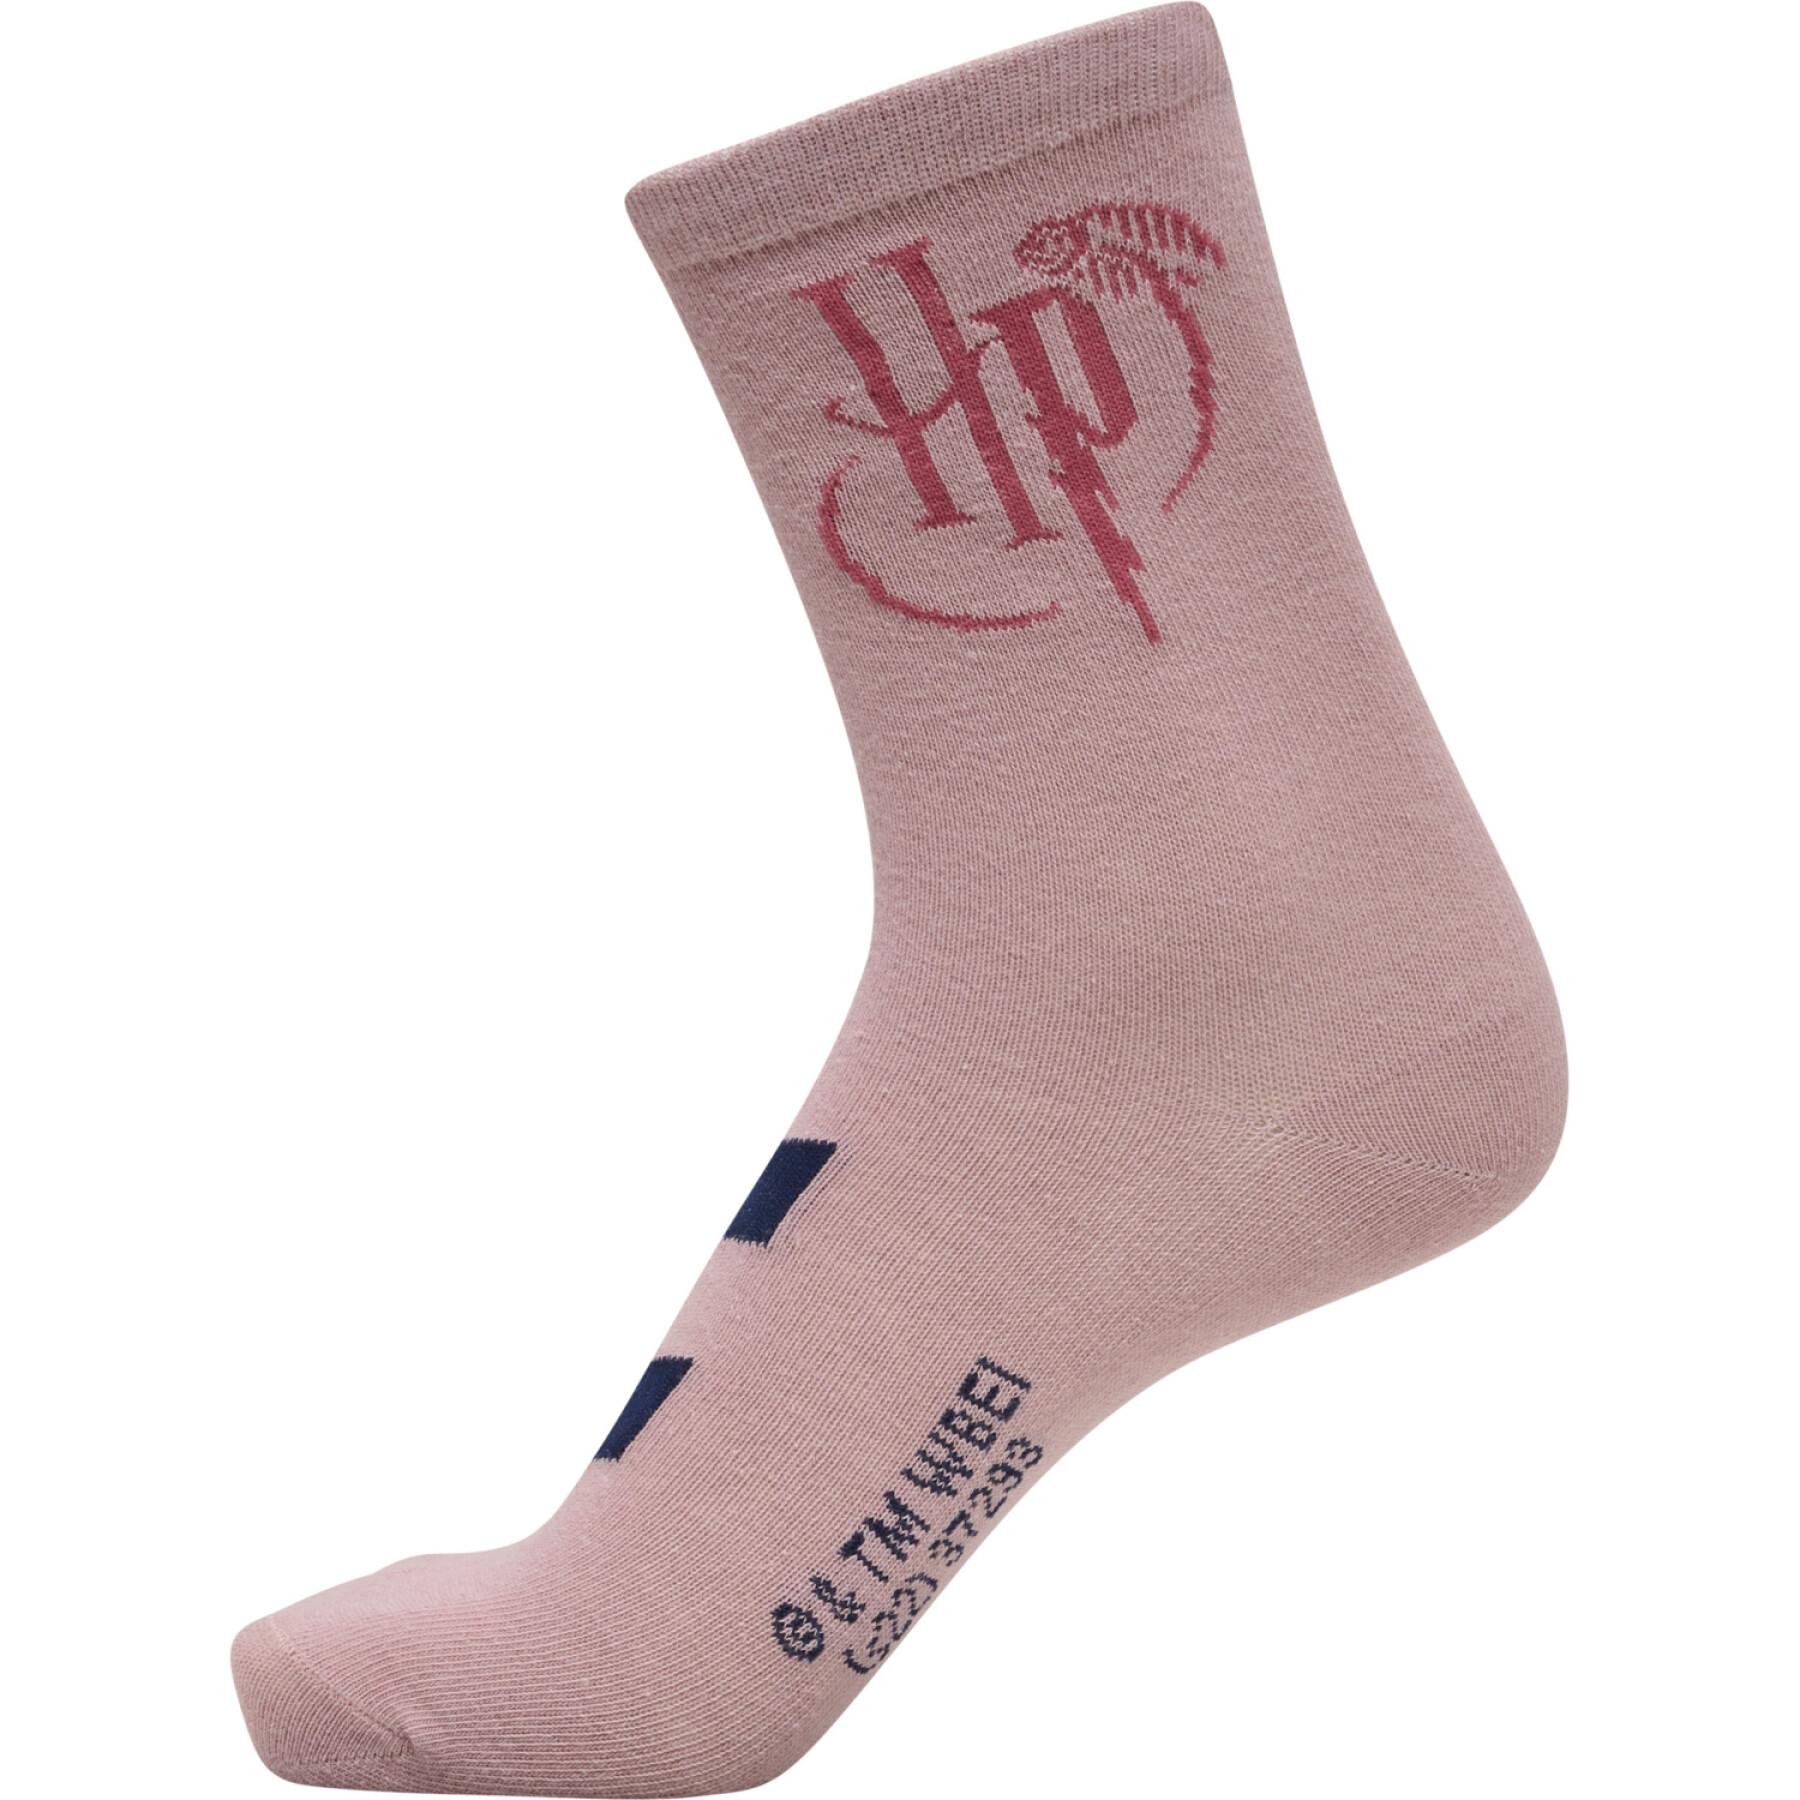 Juego de 3 pares de calcetines para niños Hummel Harry Potter Alfie